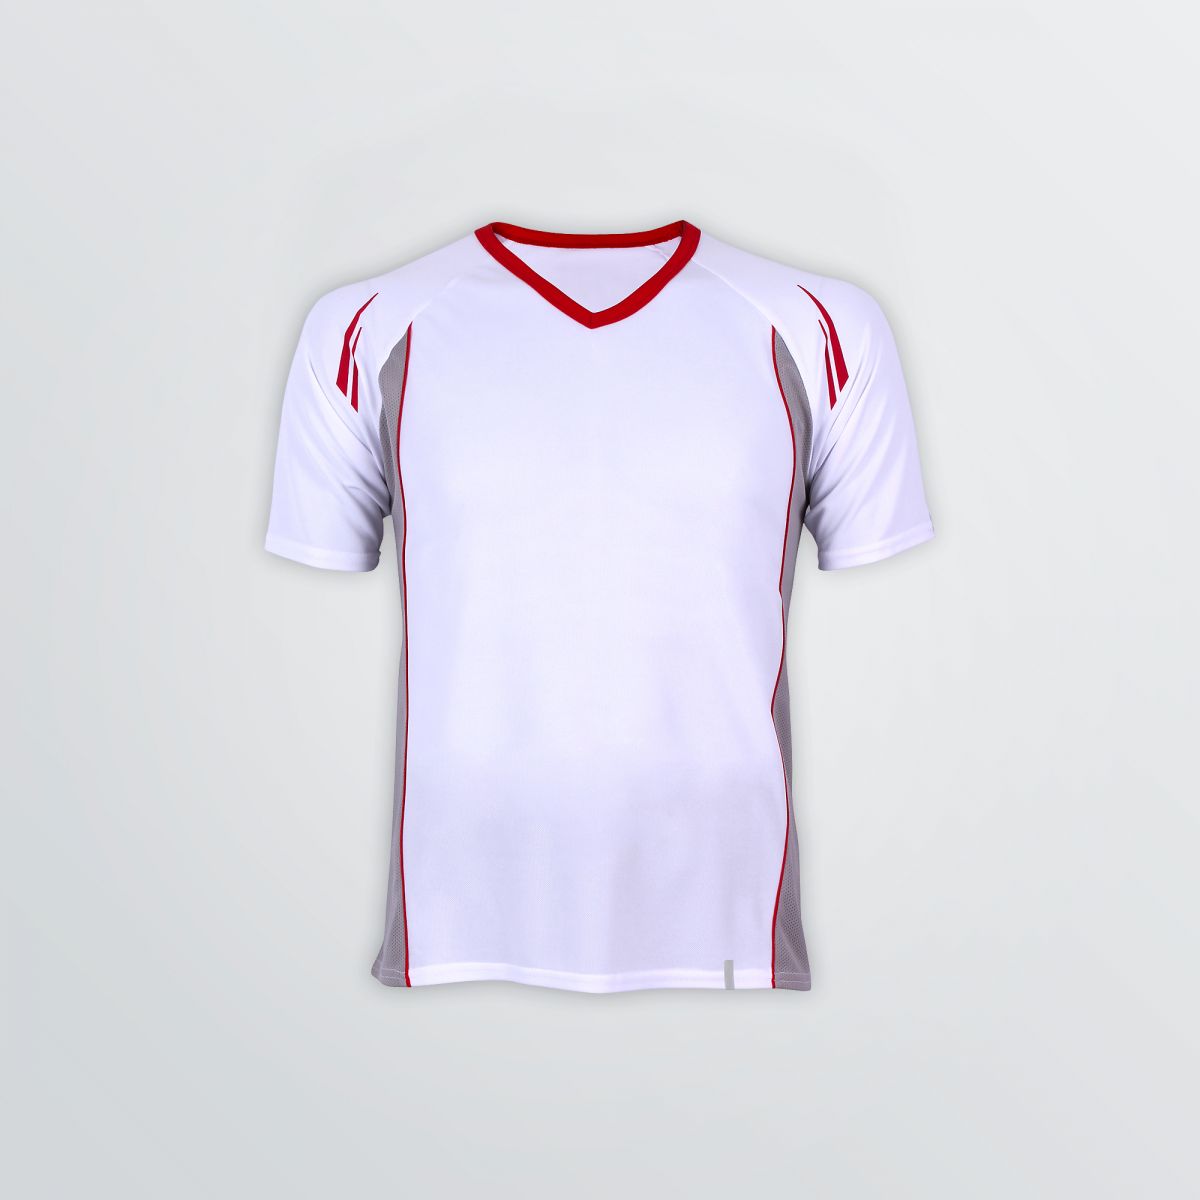 Atmungsaktives Club Tech Shirt zum Individualisieren als Produktbeispiel in weiß-rot und grauem Mesh-Seiteneinsatz - Frontansicht